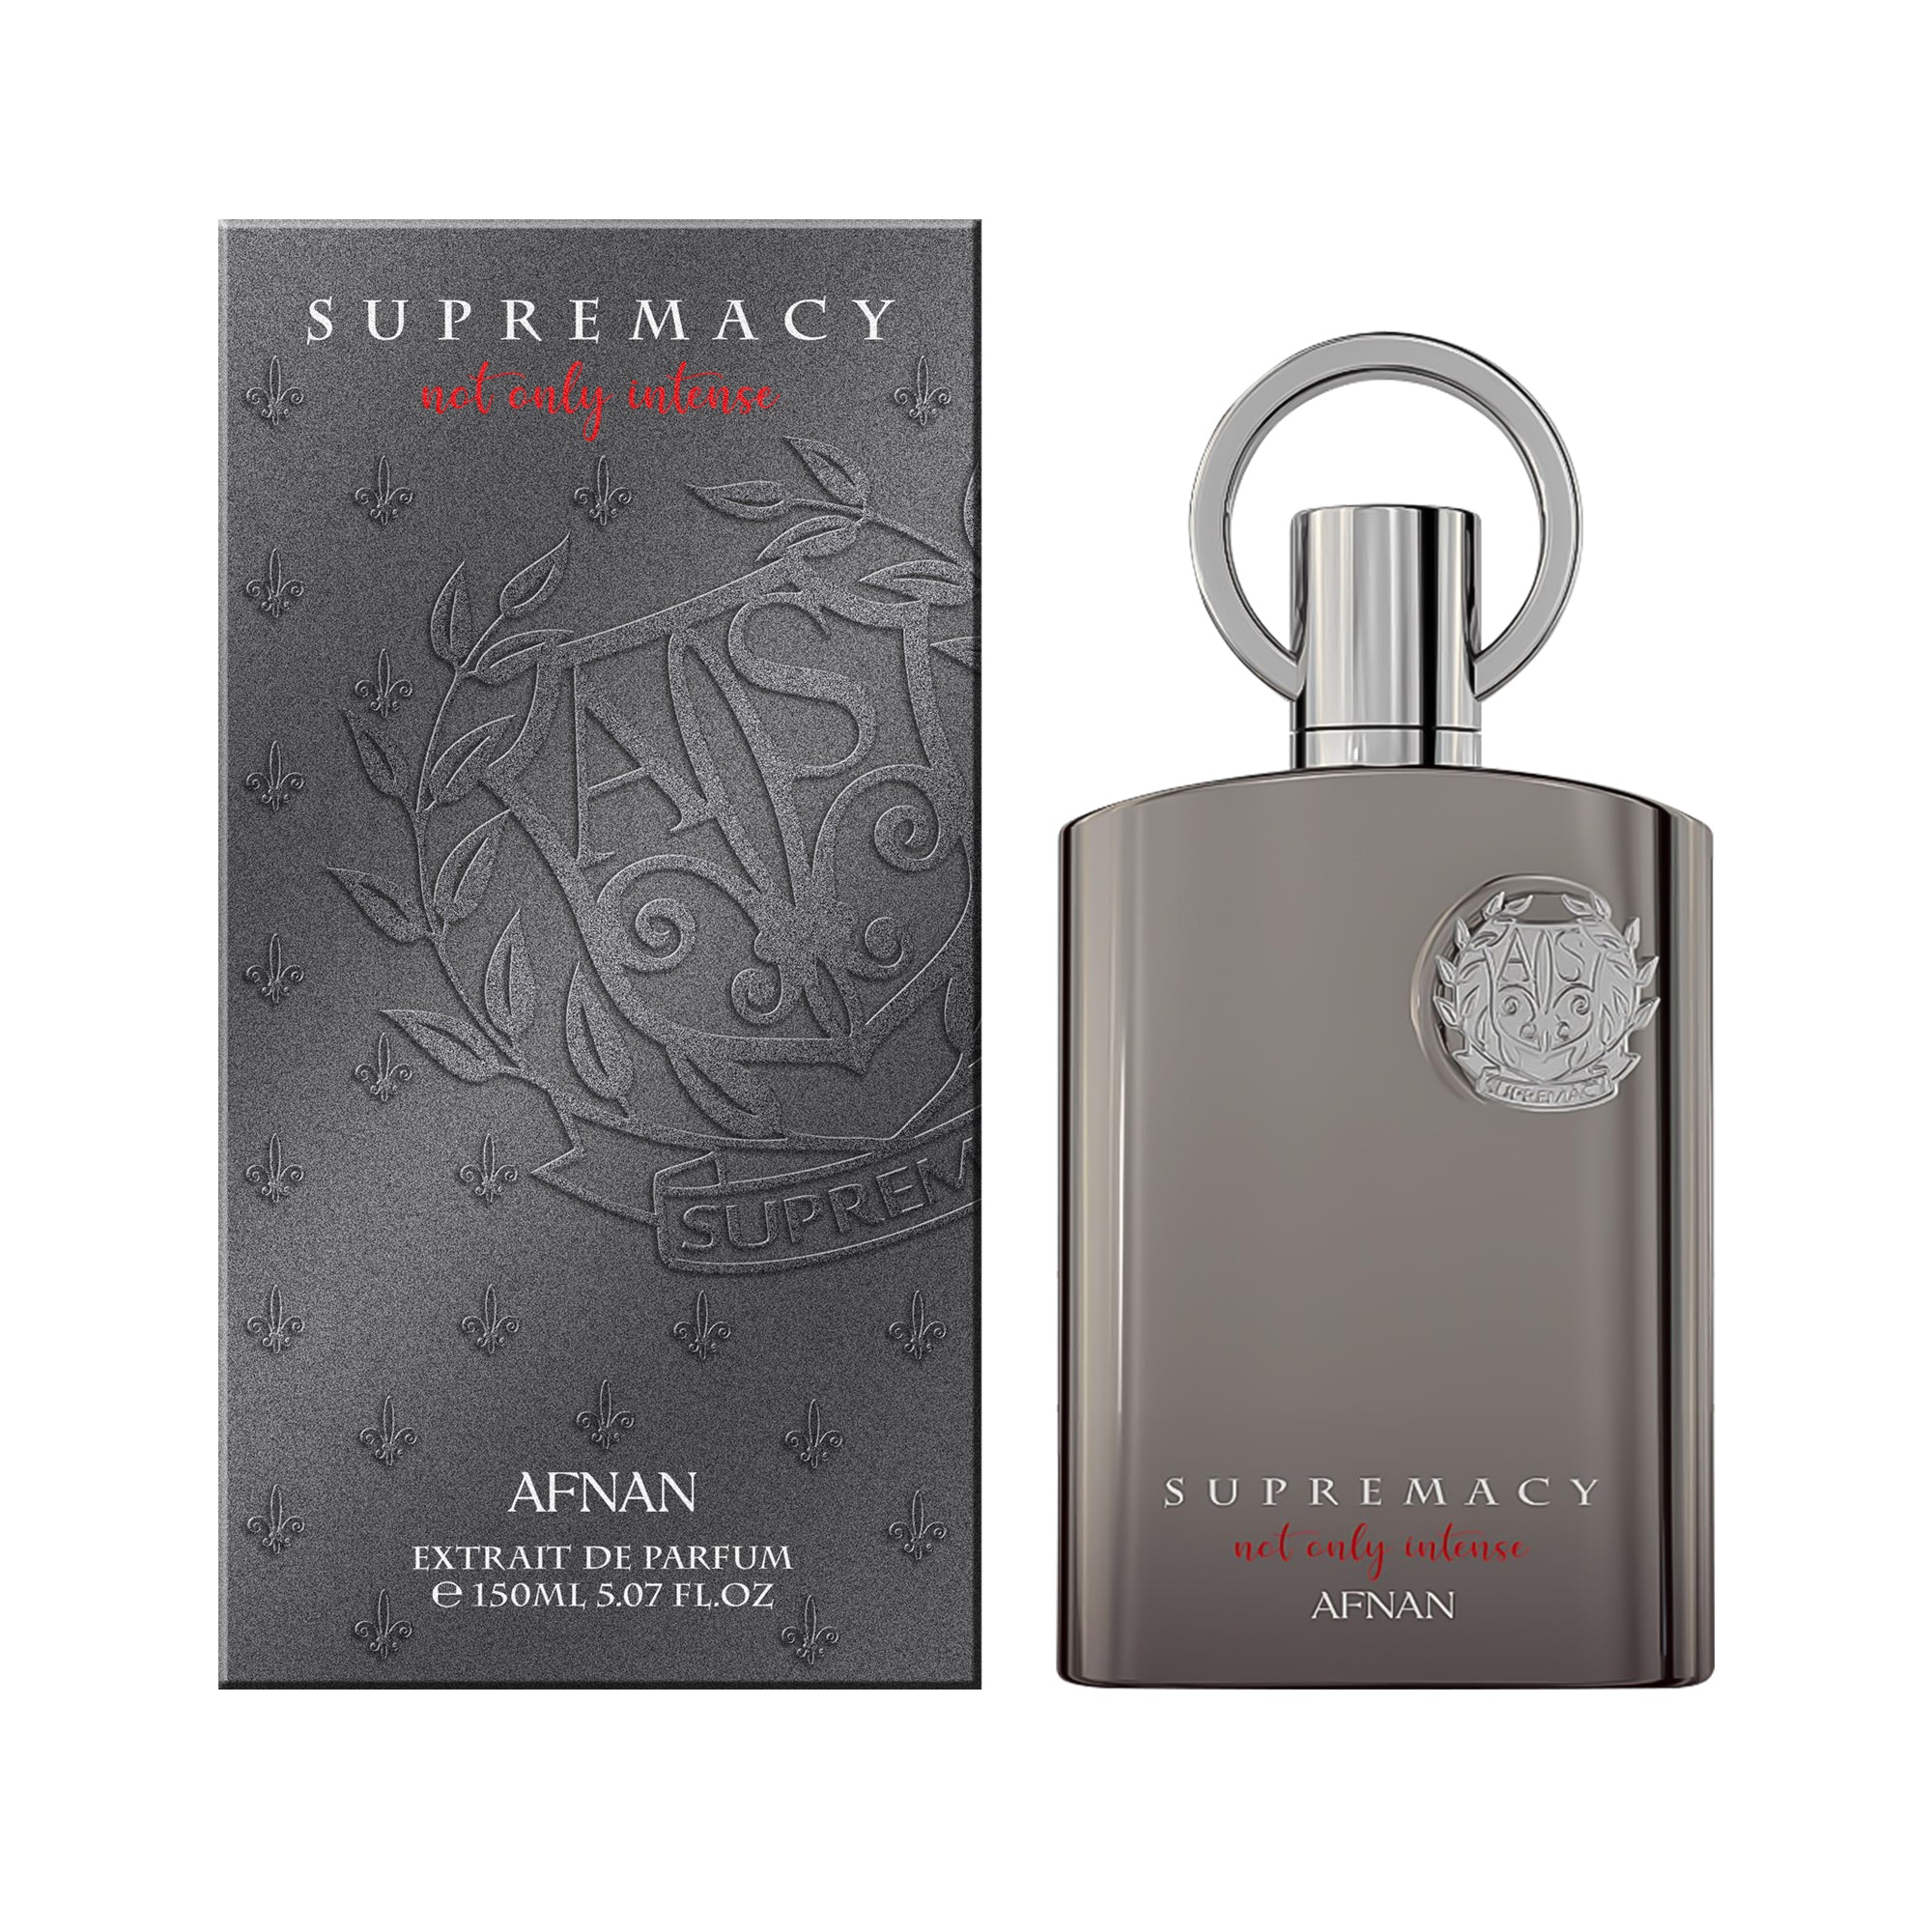 Afnan Supremacy Not Only Intense Eau De Parfum 150ml